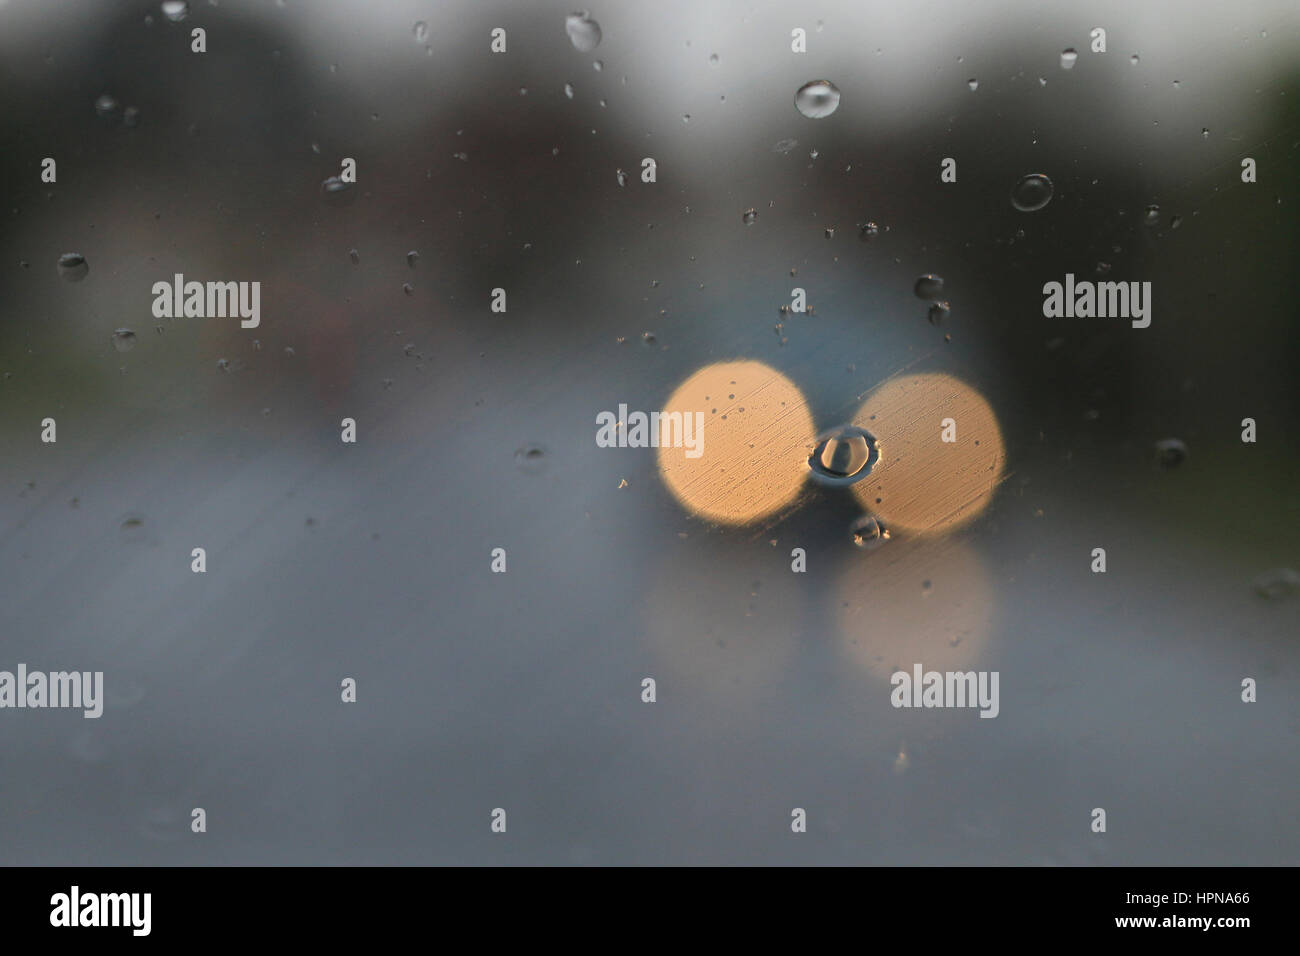 Scheinwerfer des entgegenkommenden Verkehrs durch Regen auf einer Windschutzscheibe gesehen Stockfoto